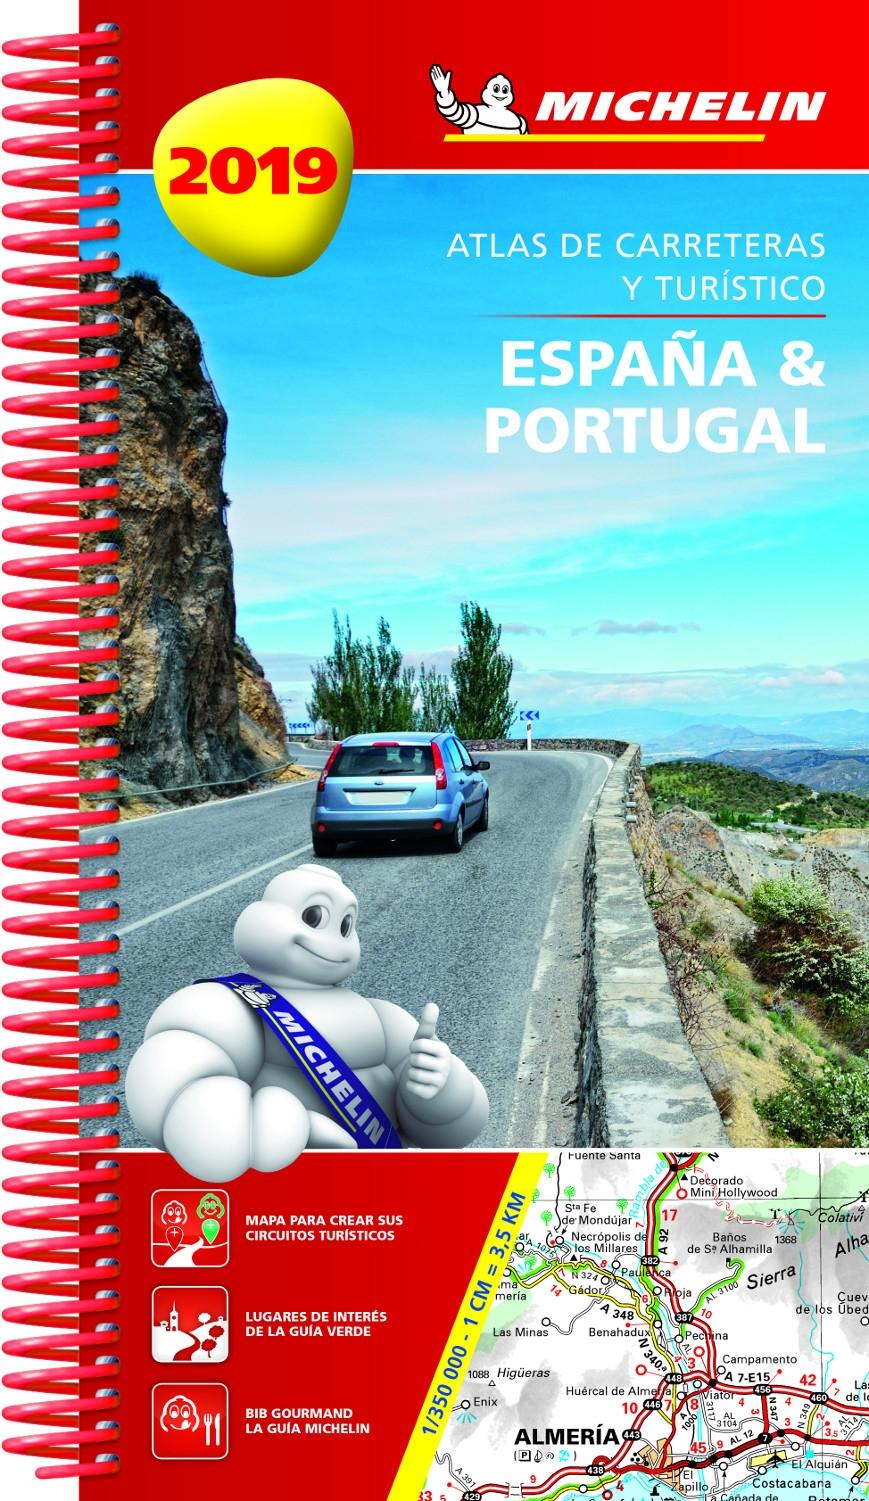 Atlas de carreteras y turístico. España y Portugal 2019